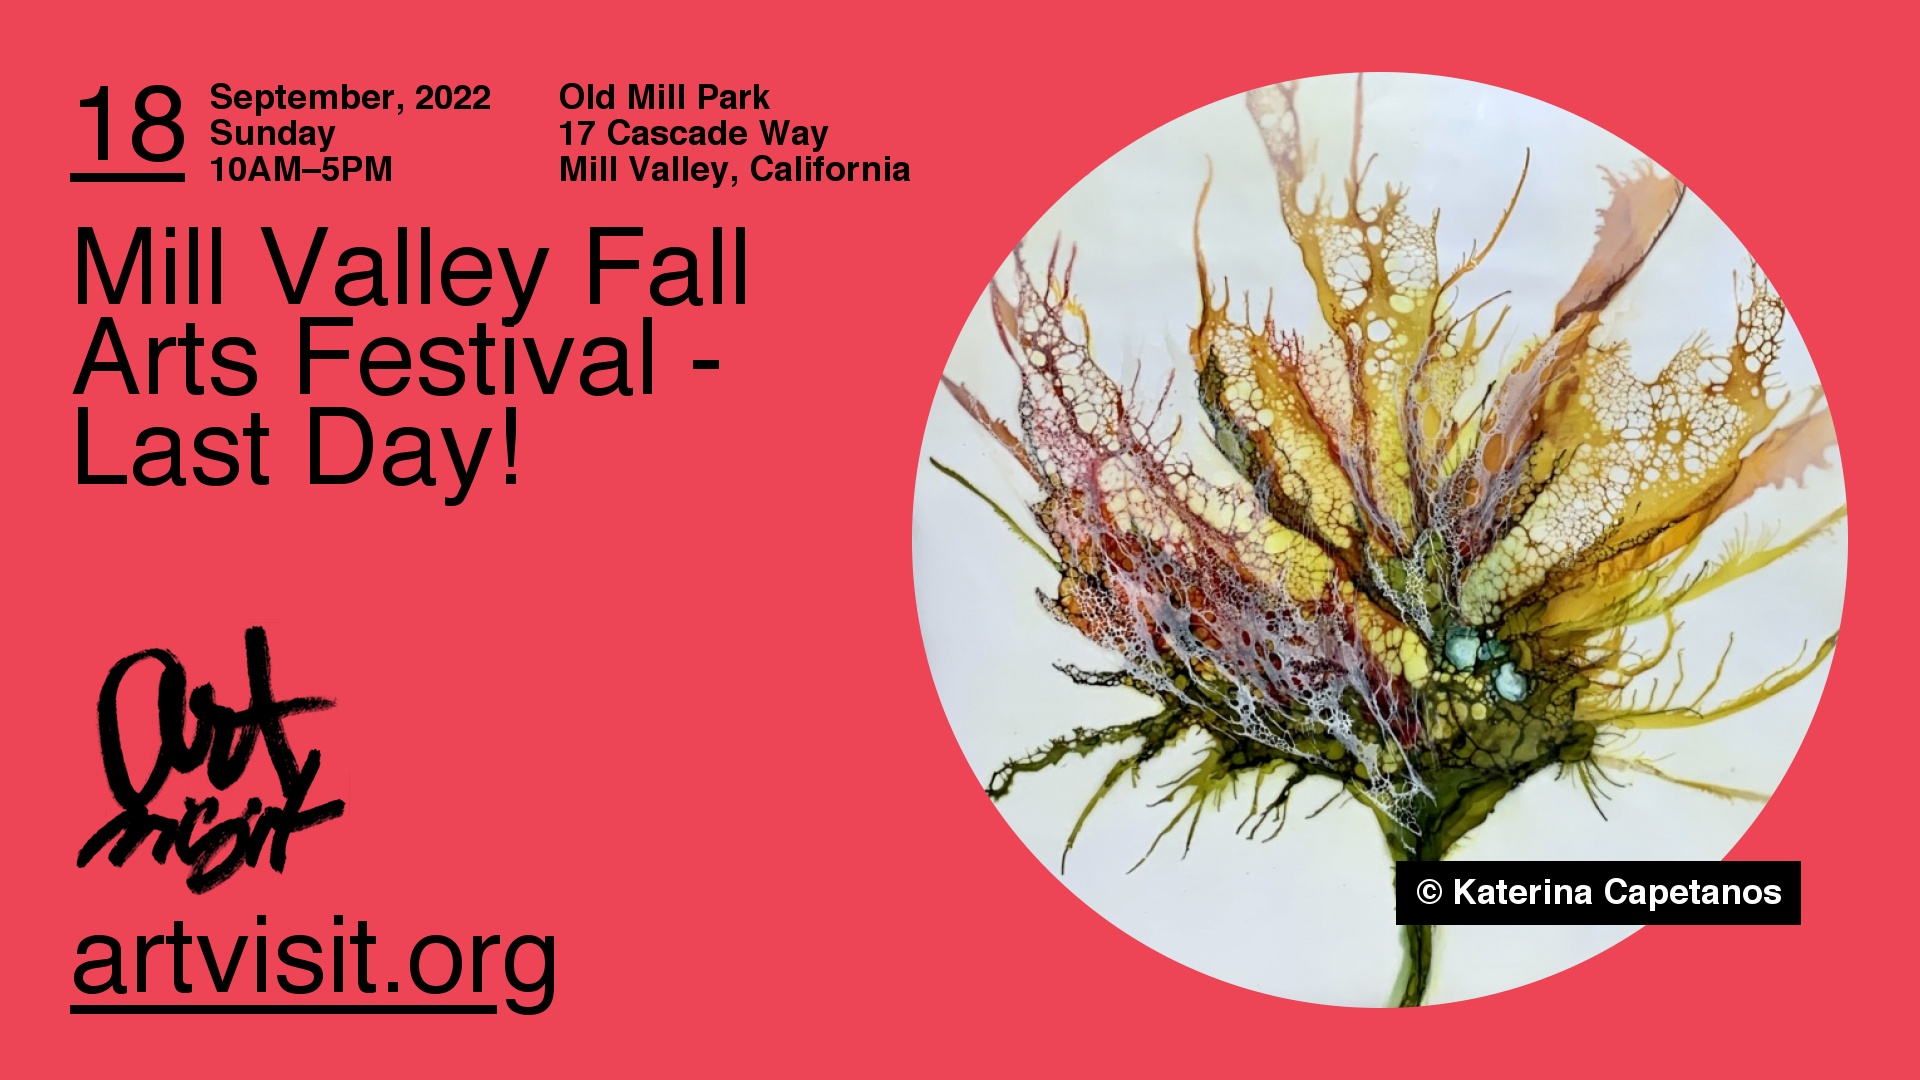 Mill Valley Fall Arts Festival Last Day! Sunday, September 18, 2022